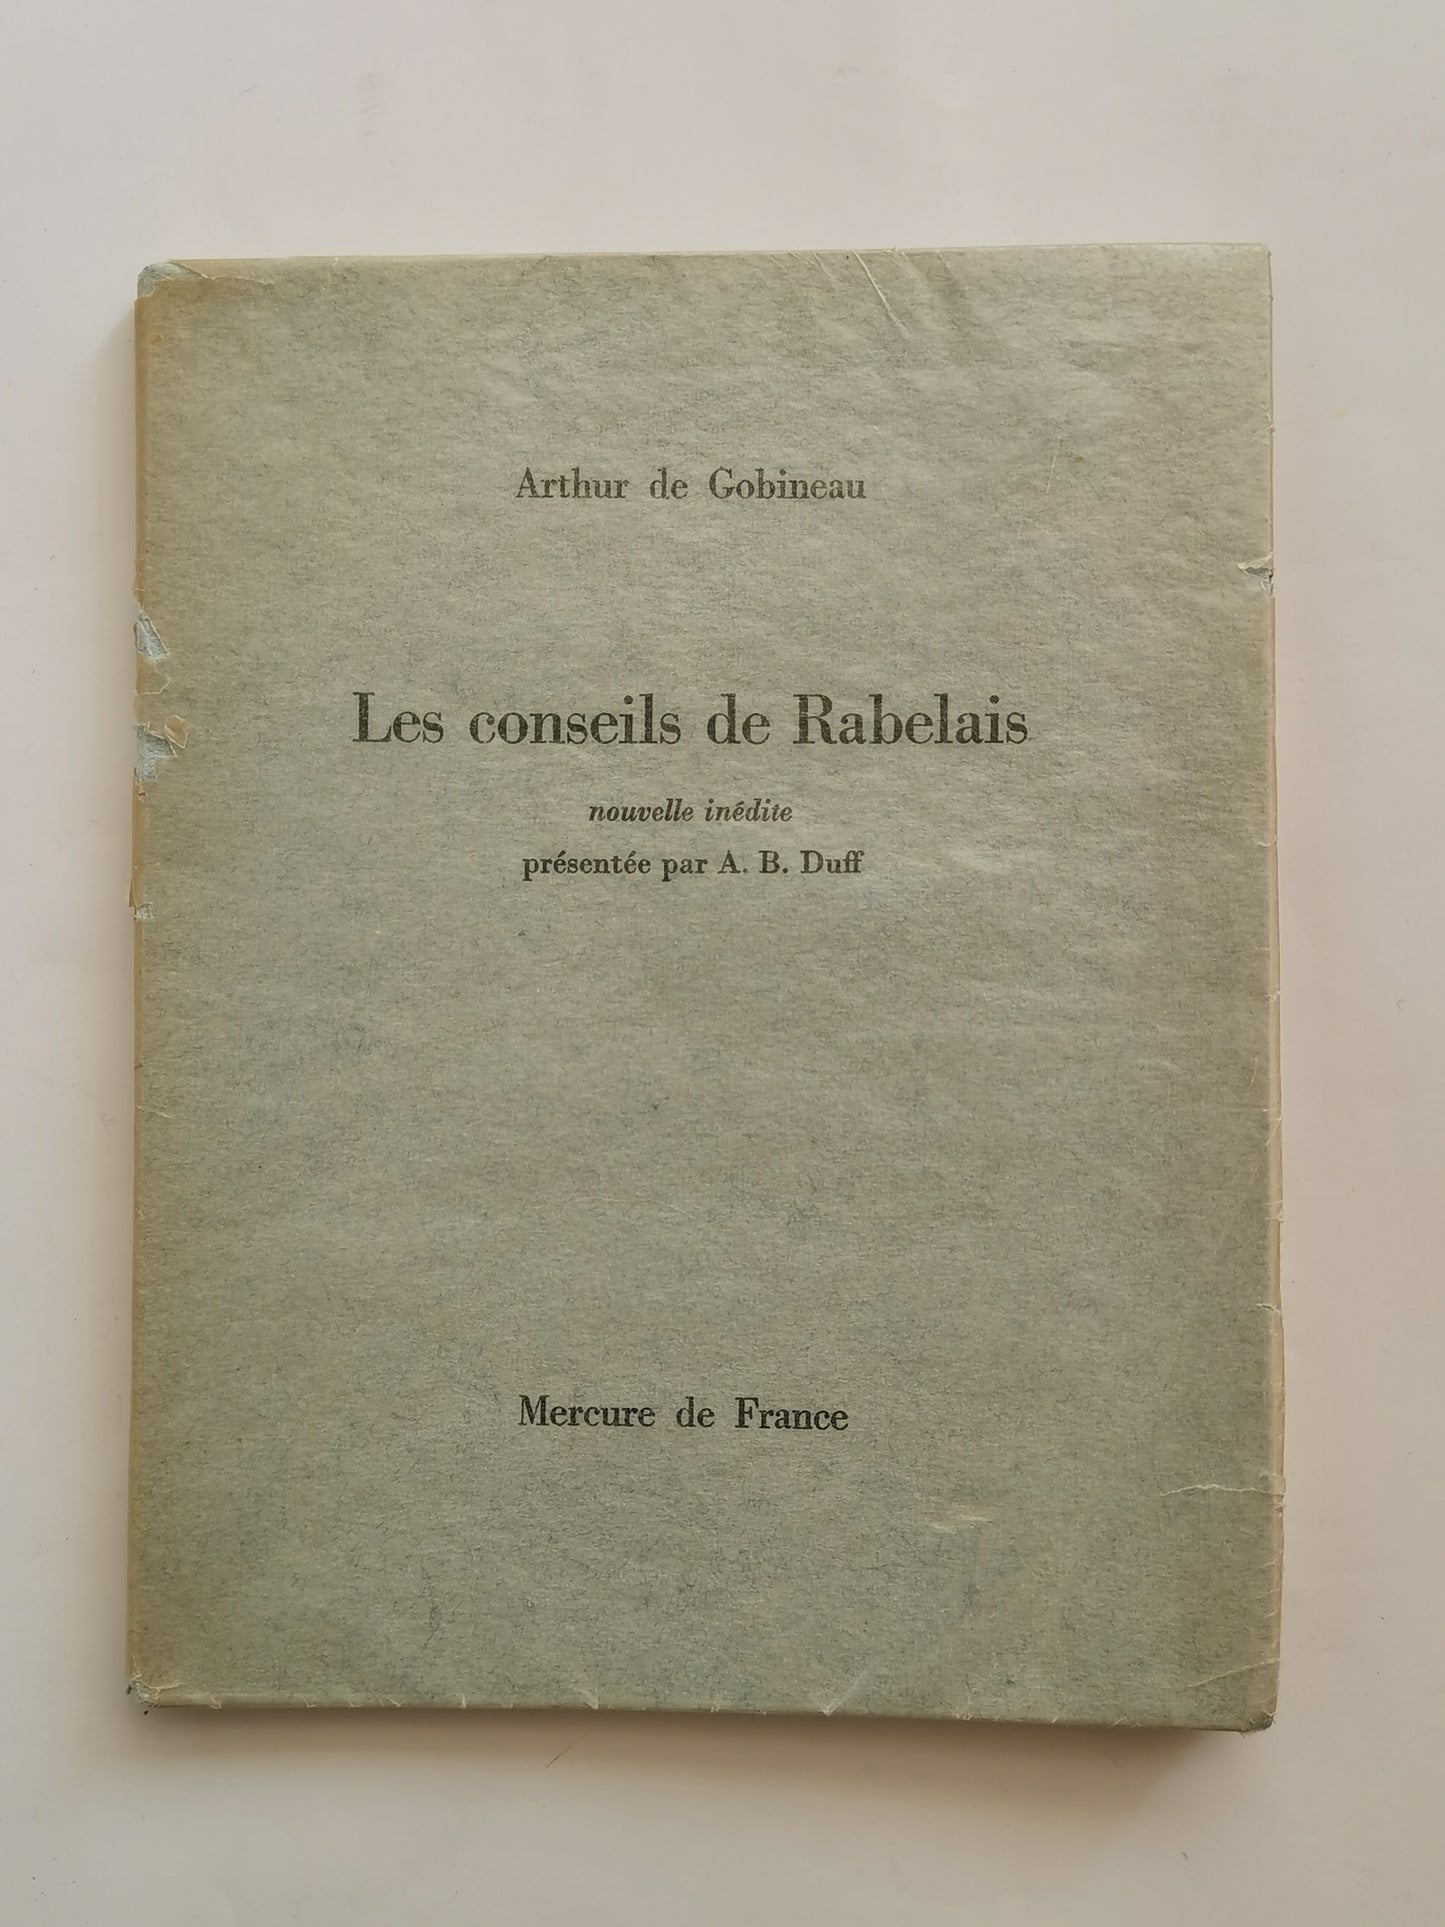 Les conseils de Rabelais, Arthur de Gobineau, nouvelle inédite présentée par A. B. Duff, Mercure de France, 1962.